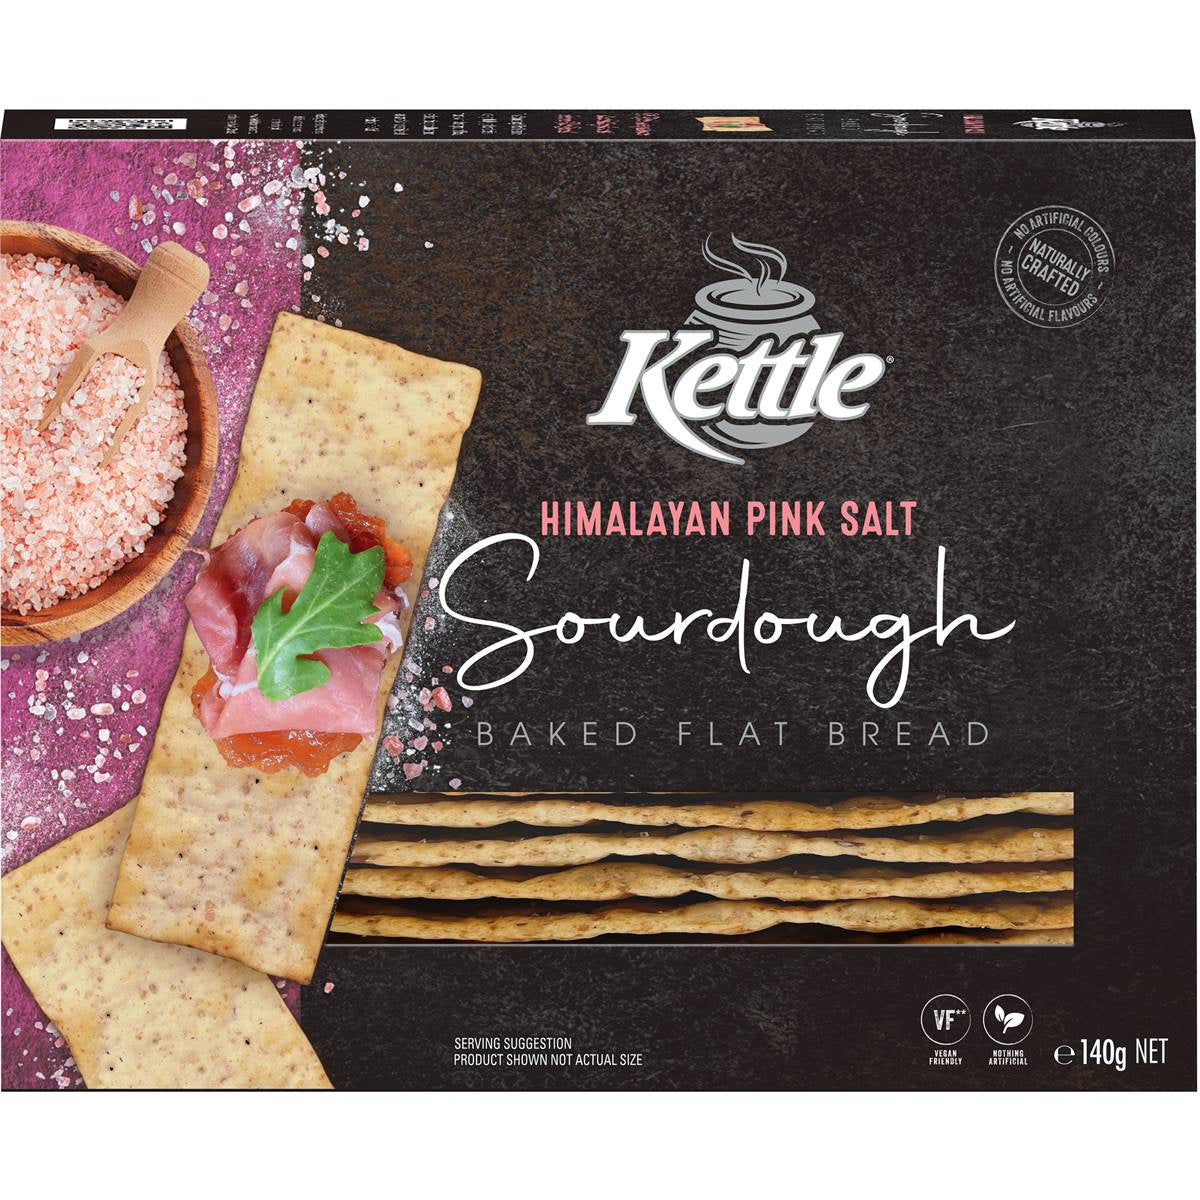 Kettle Sourdough Baked Flat Bread Himalayan Pink Salt 140g